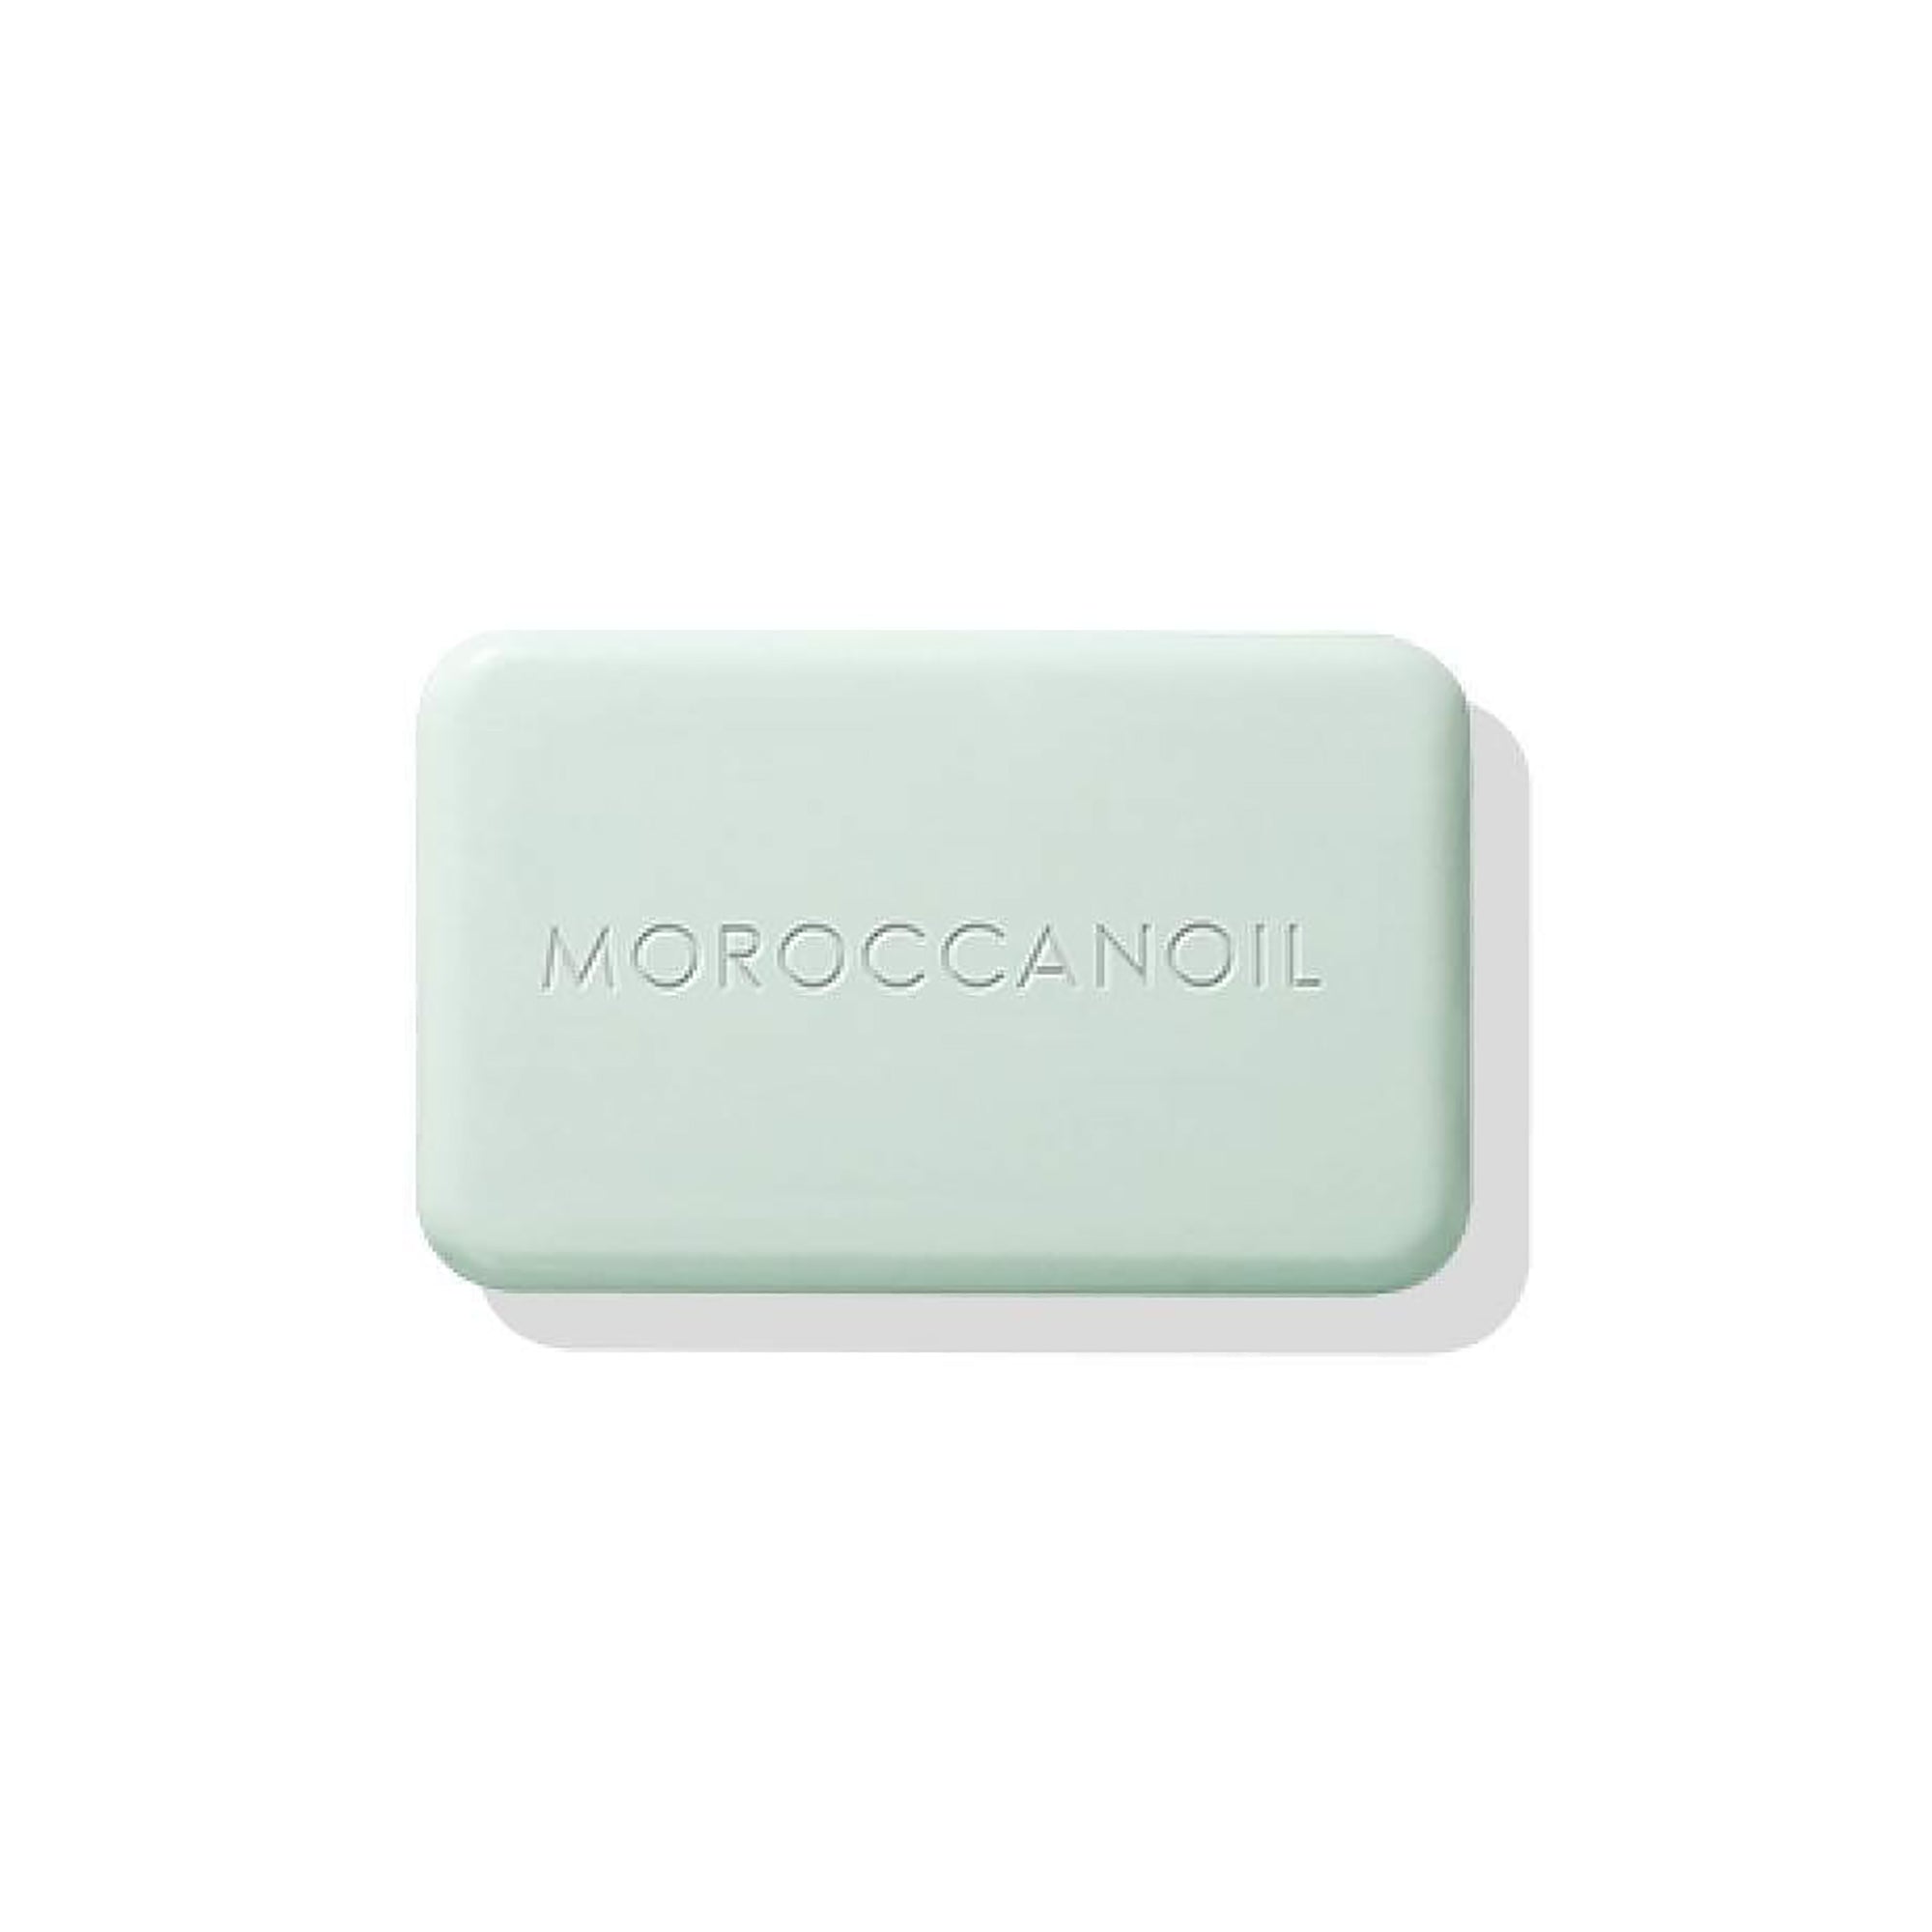 MoroccanOil Body Soap - Originale / ORIGINALE